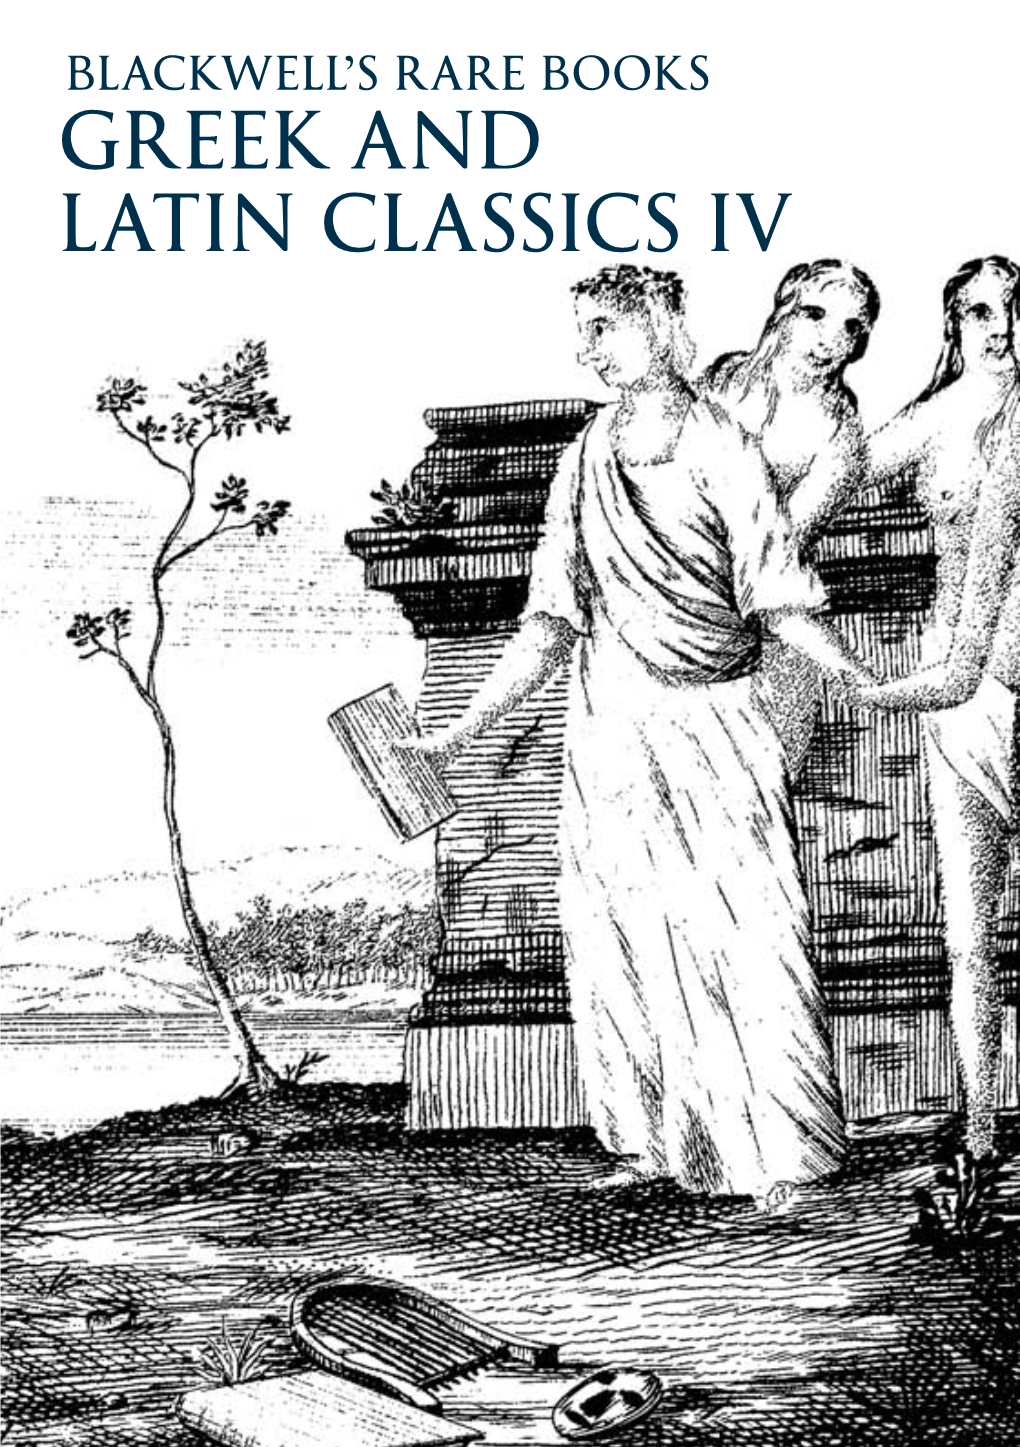 GREEK and LATIN CLASSICS IV Blackwell’S Rare Books 48-51 Broad Street, Oxford, OX1 3BQ